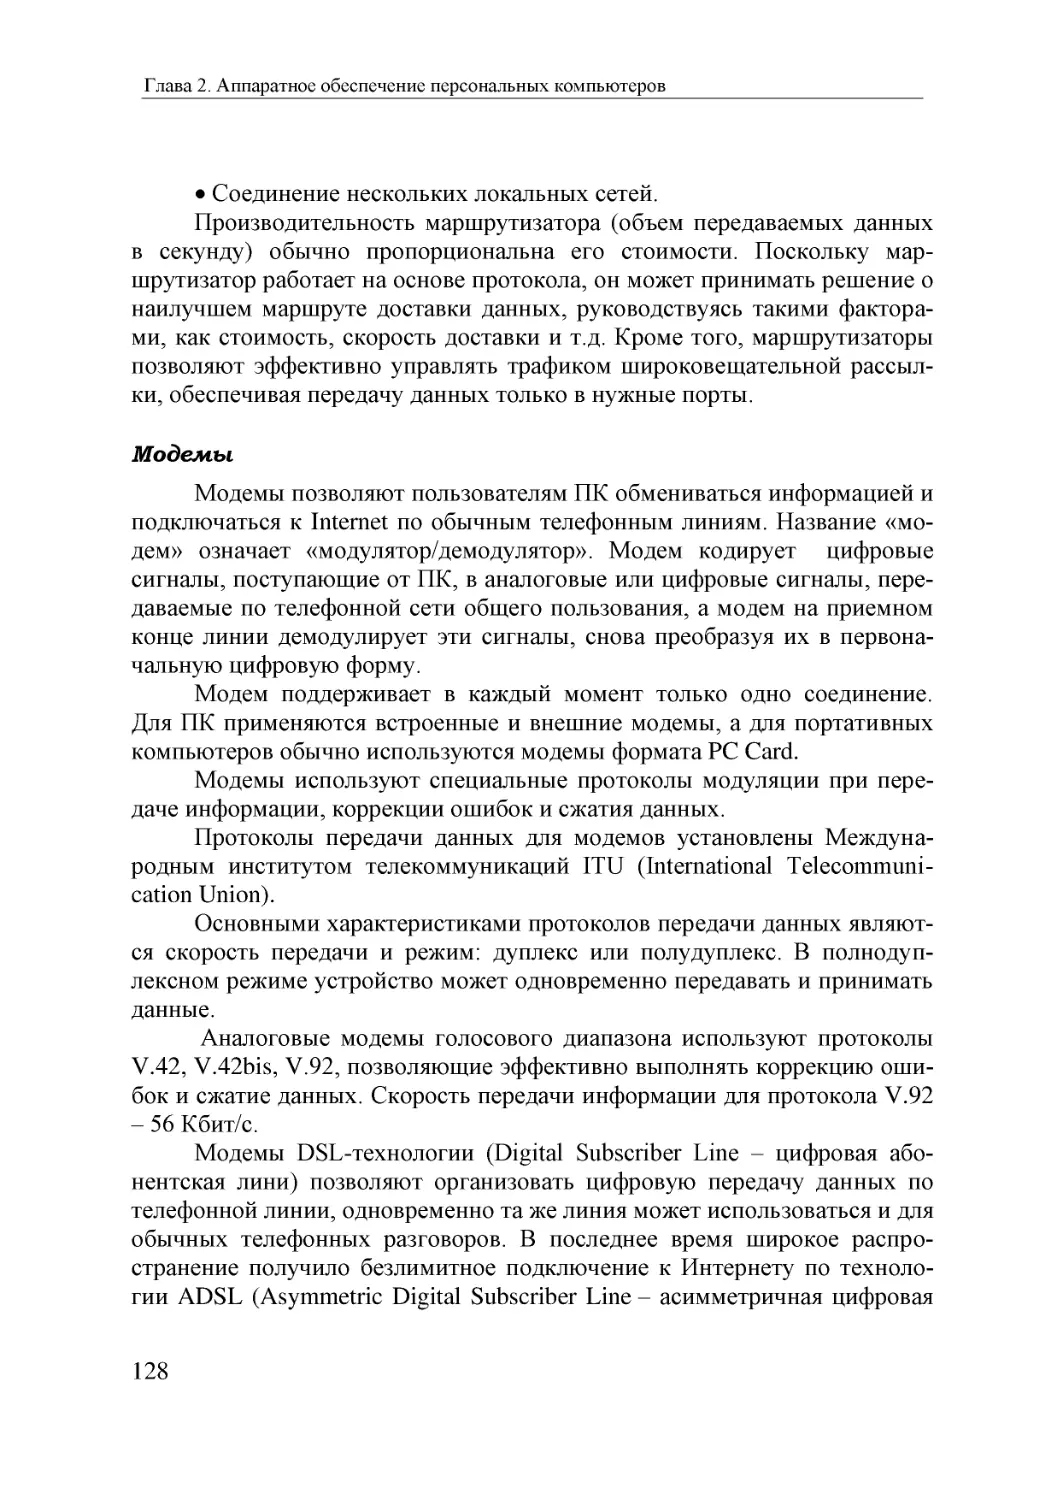 Informatika_Uchebnik_dlya_vuzov_2010 128